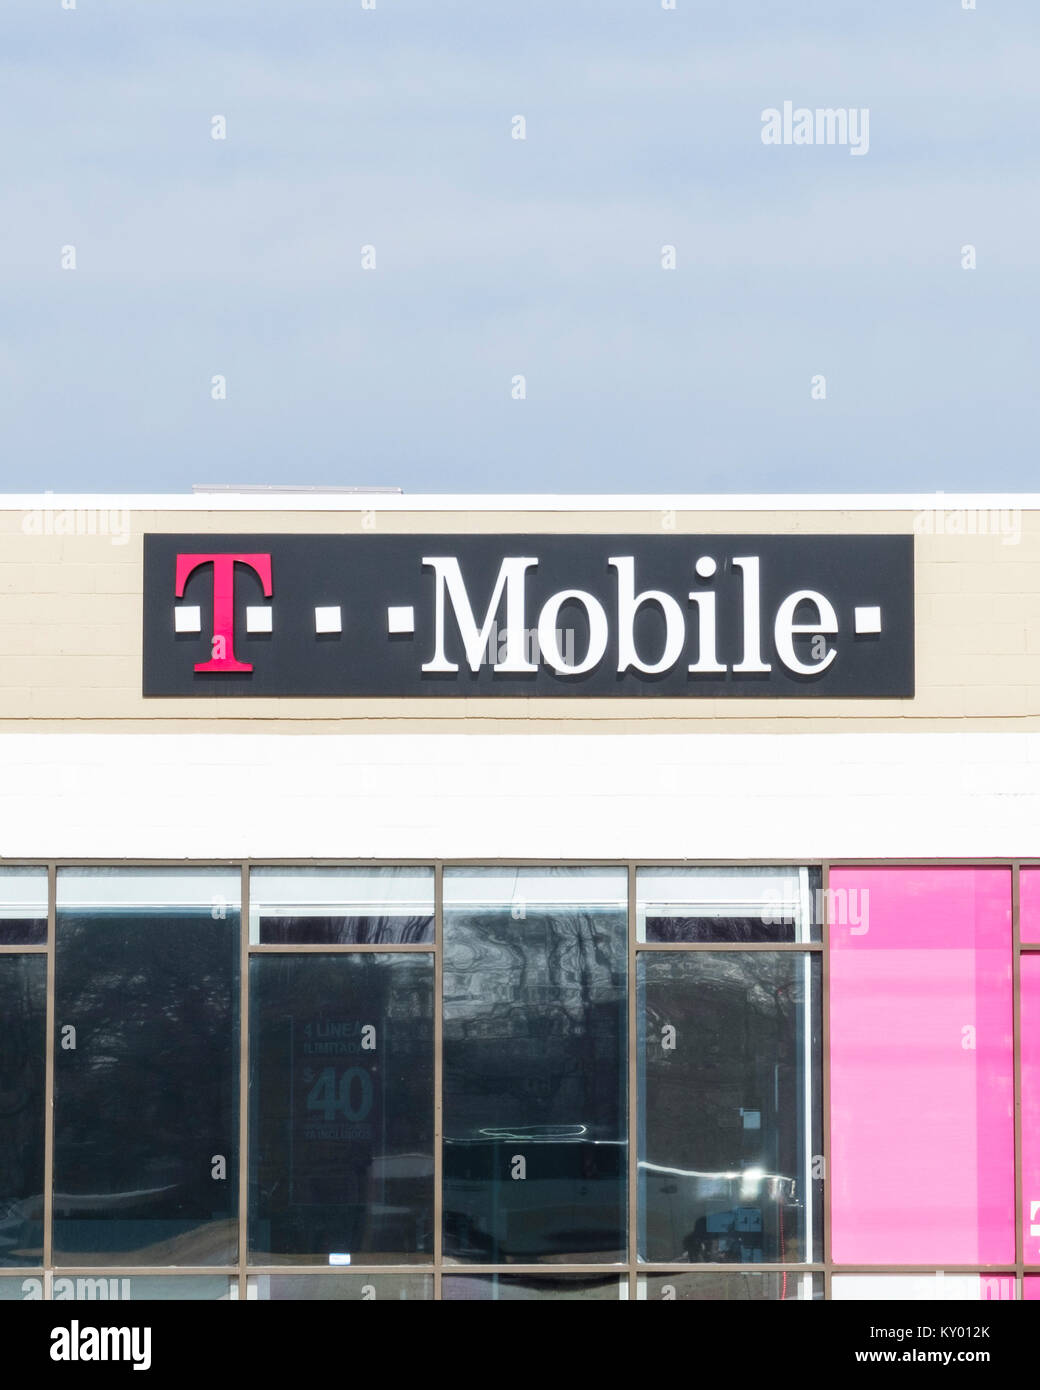 Von außen ein T Mobile Shop bietet Handys und Mobilfunk. Oklahoma City, Oklahoma, USA. Stockfoto